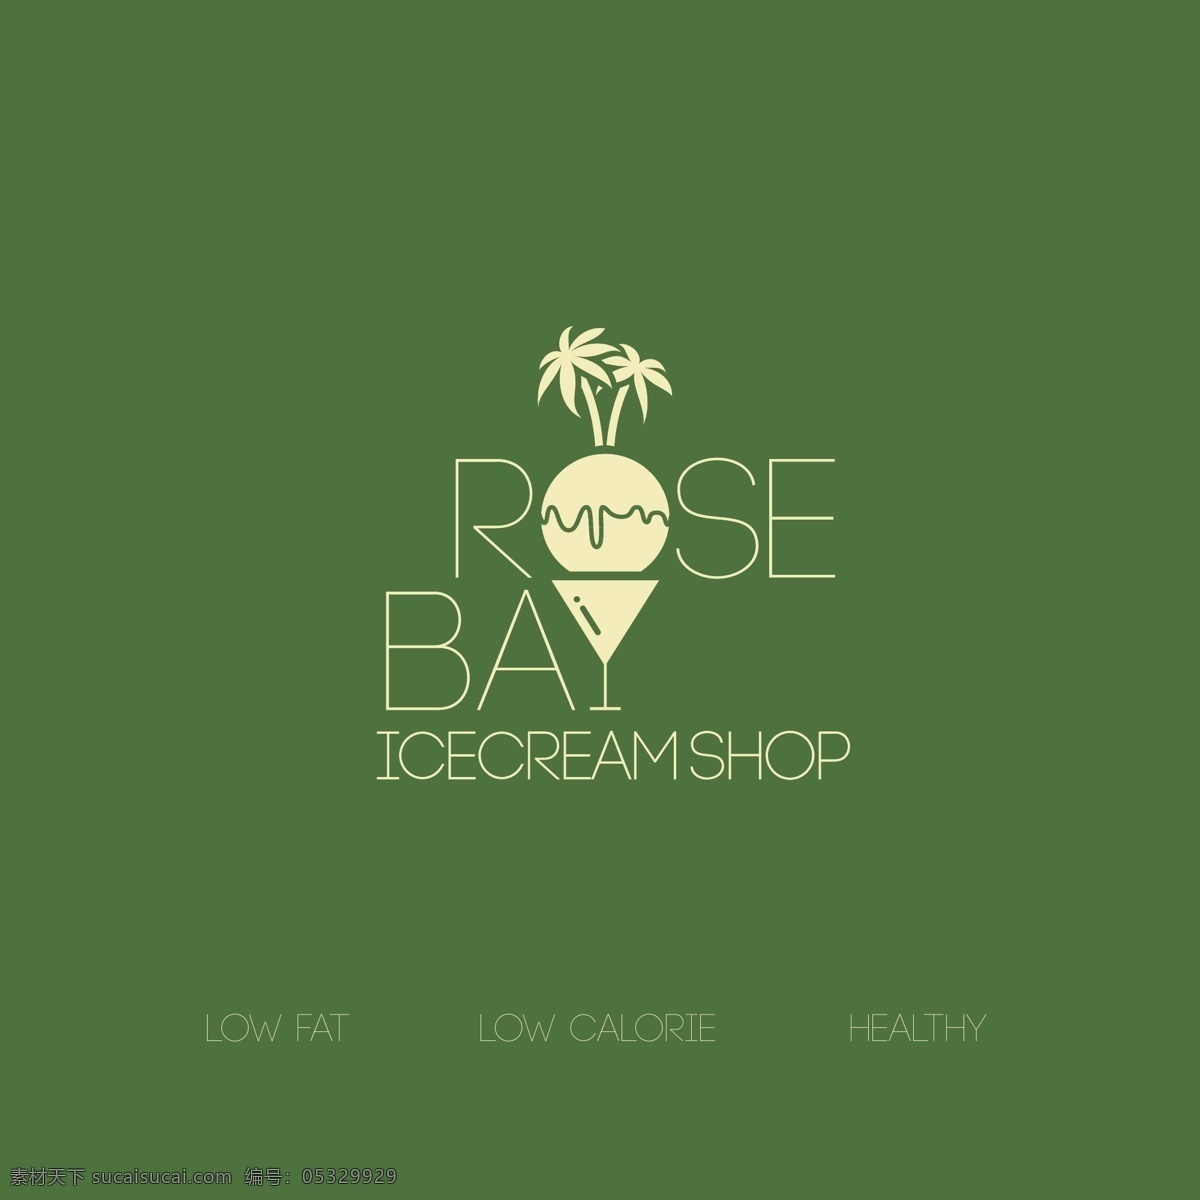 玫瑰 海滩 冰淇淋 店 logo 酒杯 玫瑰海岸 椰子树 低脂 低糖 标志图标 企业 标志